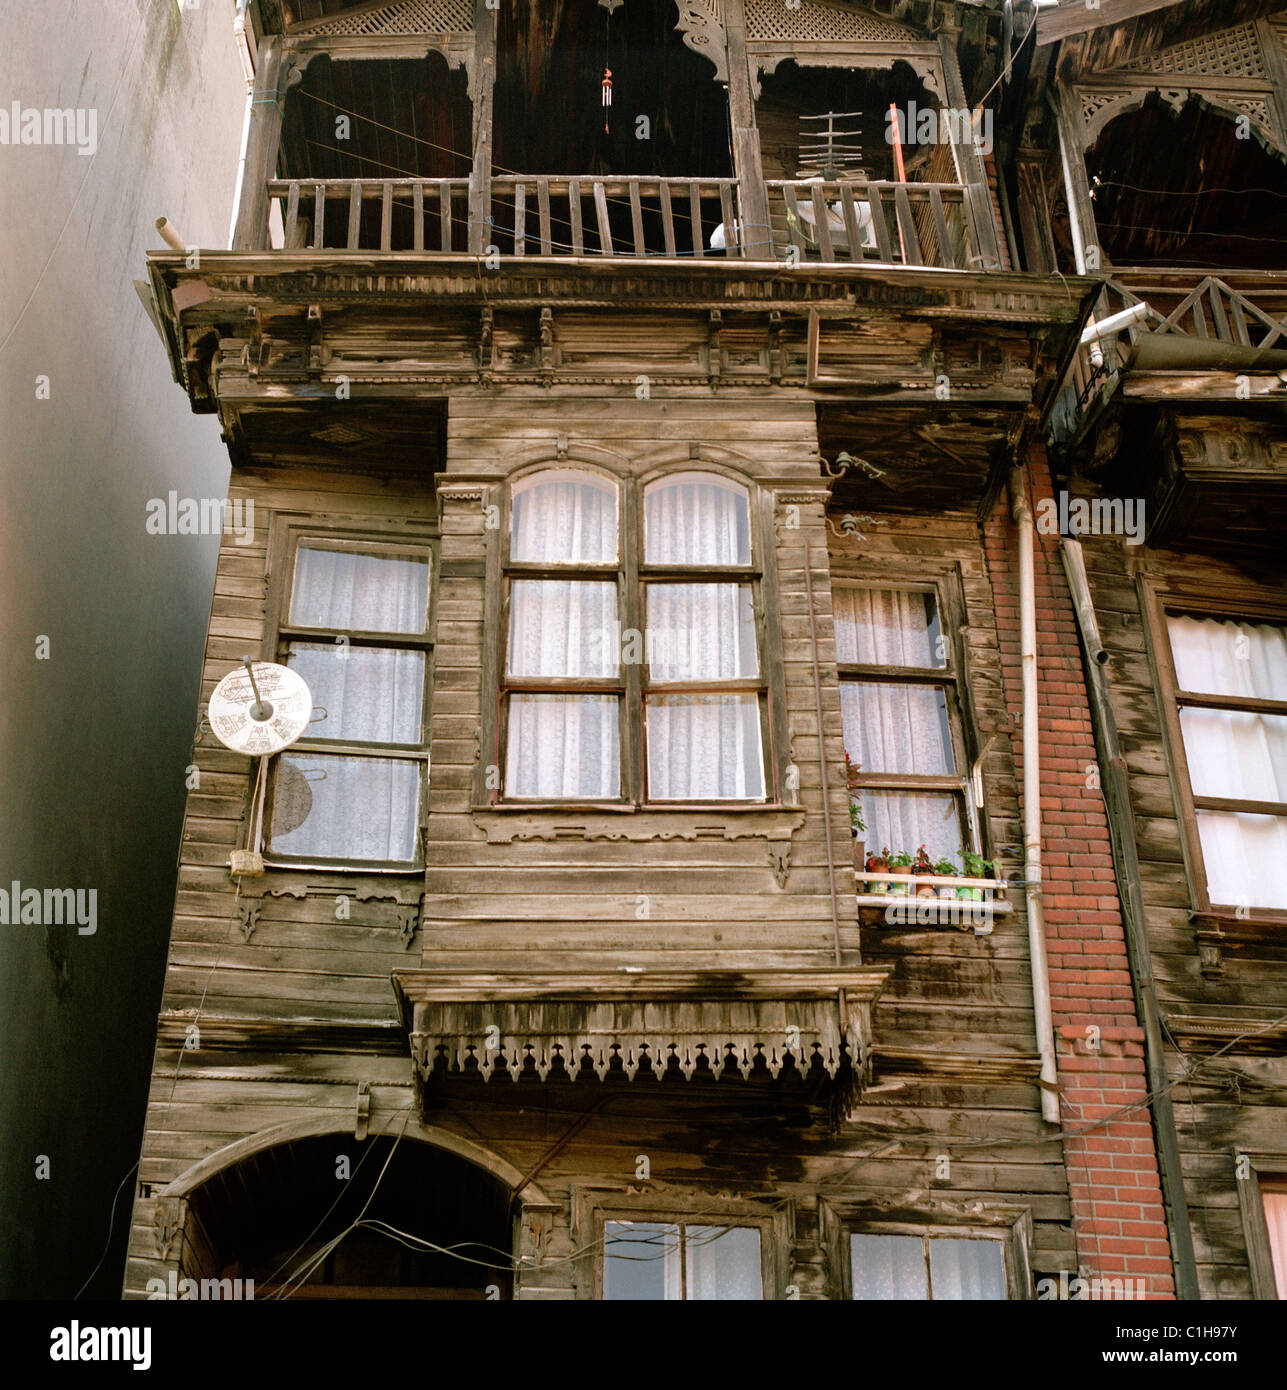 Alten osmanischen Haus in Istanbul in der Türkei im Nahen Osten Asien.  Wohnen Architektur bauen Häuser Geschichte historische Gebäude alte Reisen  Stockfotografie - Alamy